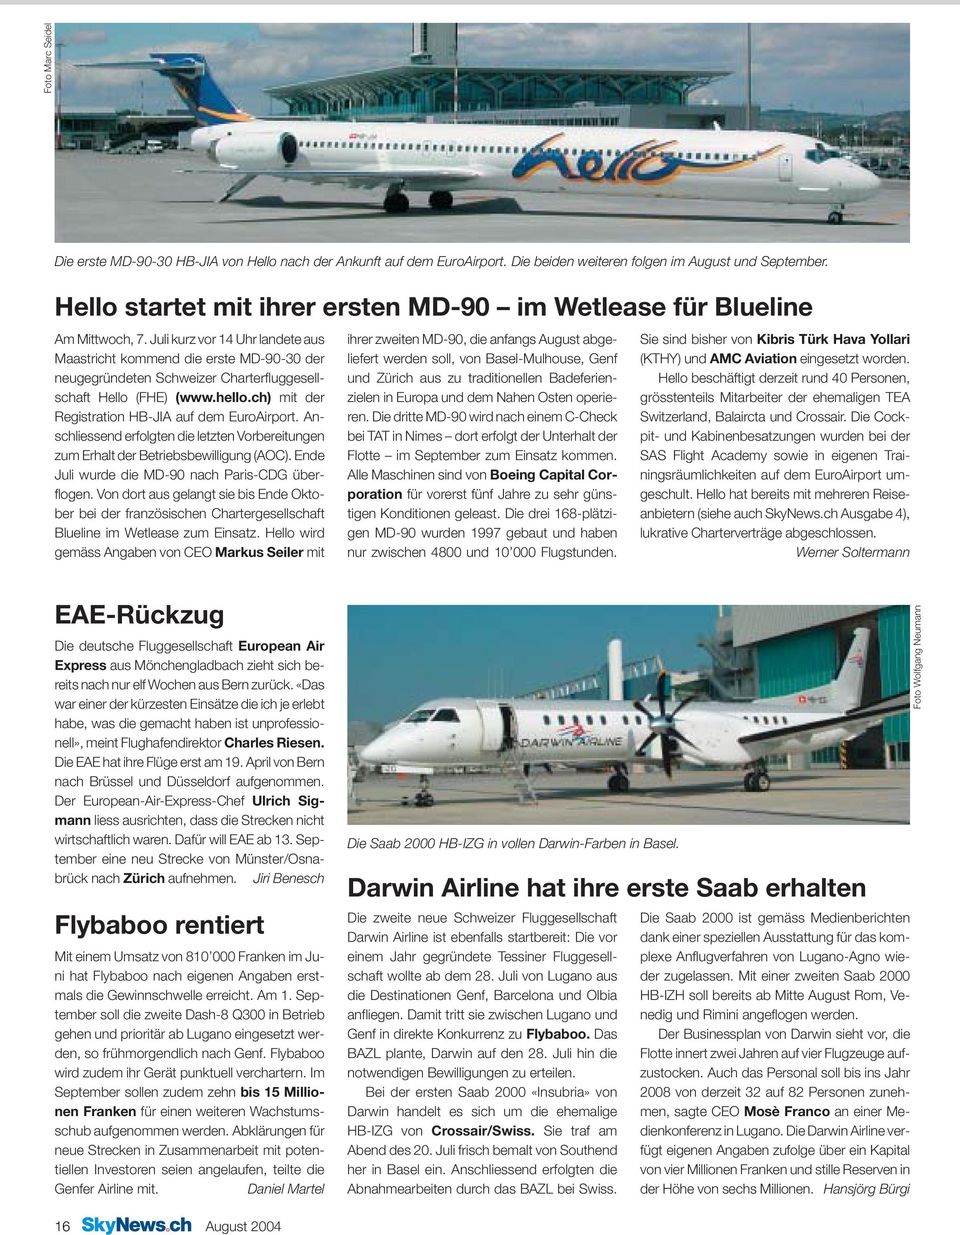 Juli kurz vor 14 Uhr landete aus Maastricht kommend die erste MD-90-30 der neugegründeten Schweizer Charterfluggesellschaft Hello (FHE) (www.hello.ch) mit der Registration HB-JIA auf dem EuroAirport.